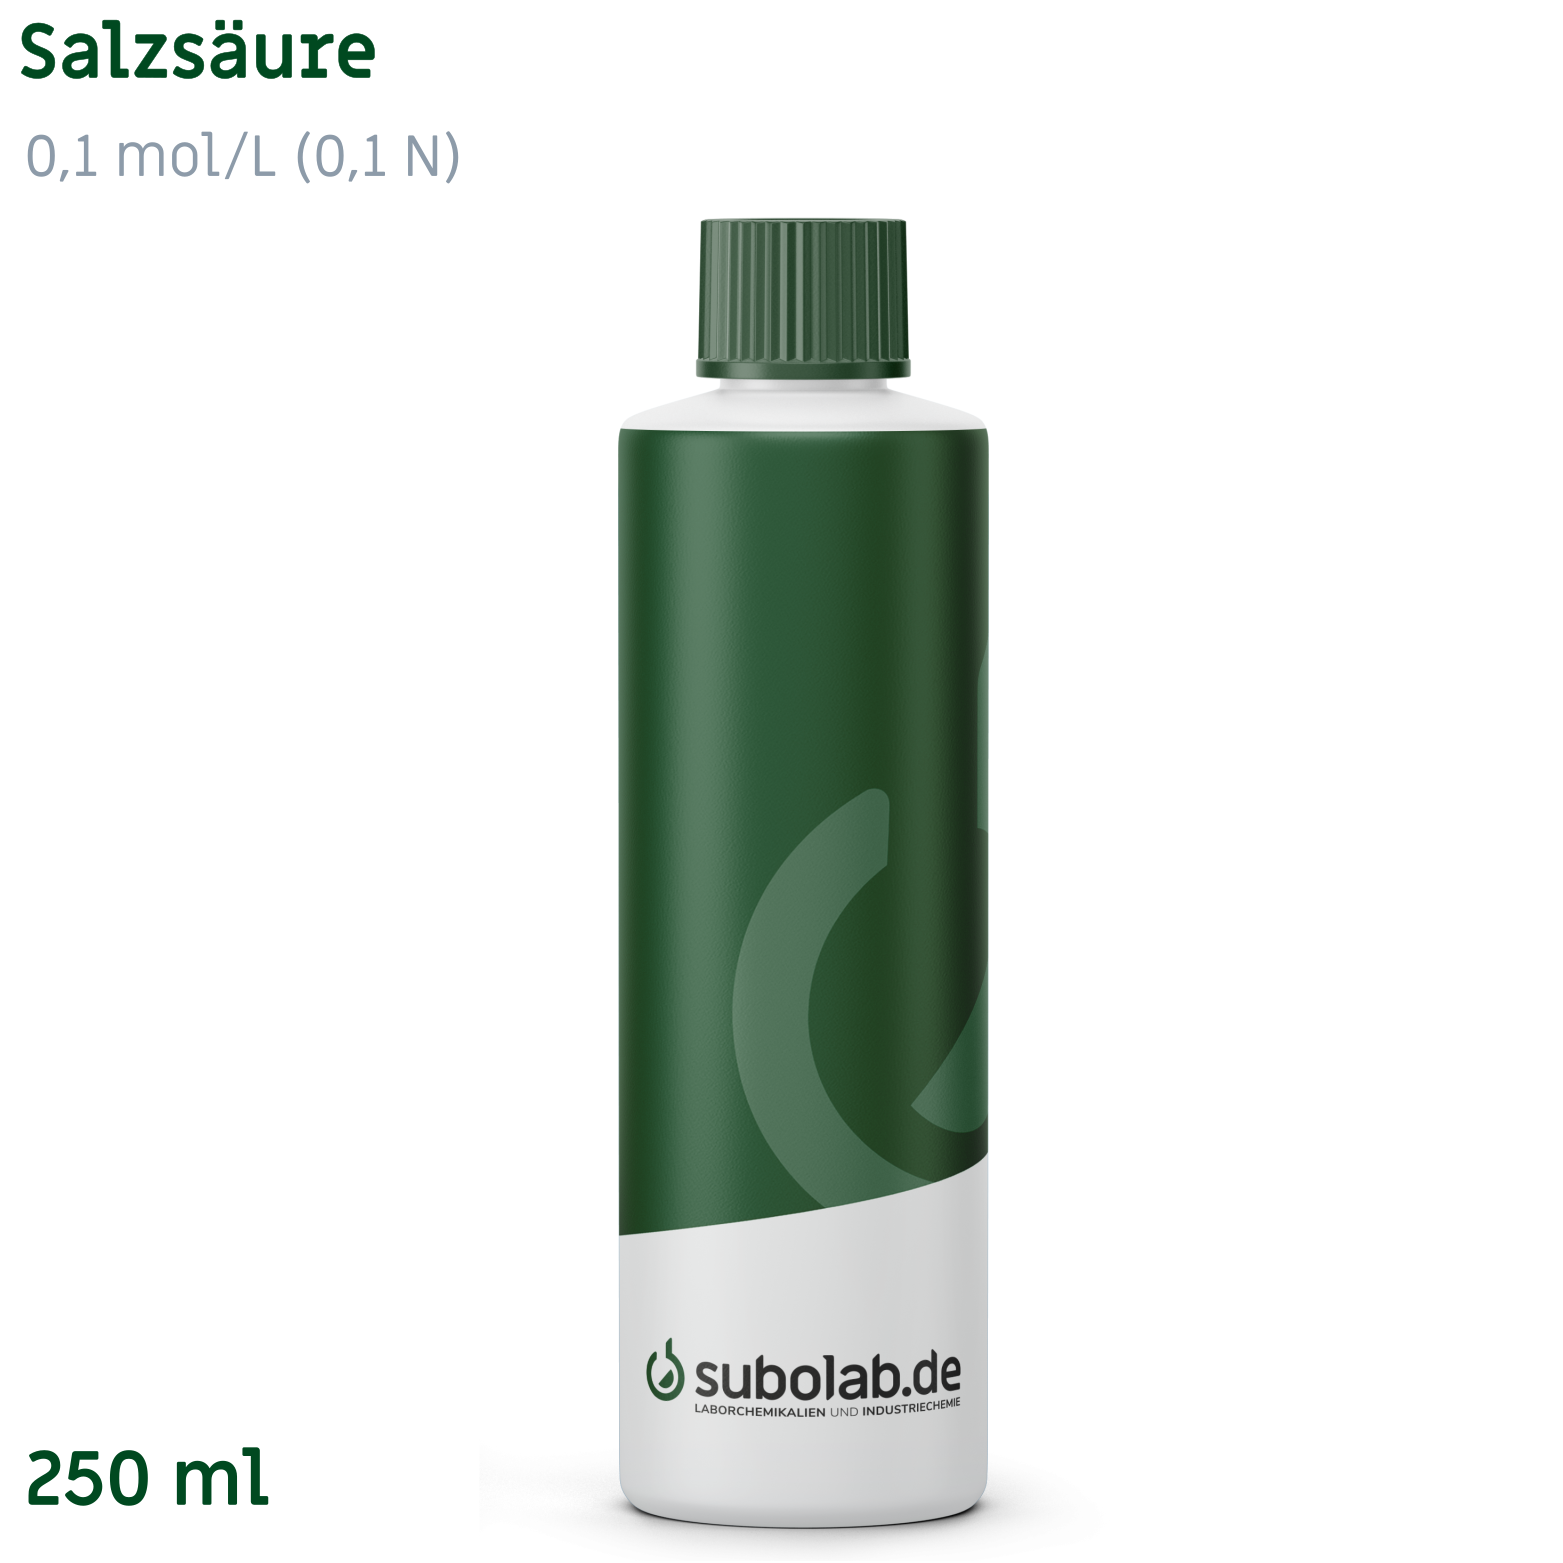 Bild von Salzsäure 0,1 mol/L (0,1 N) (250 ml)